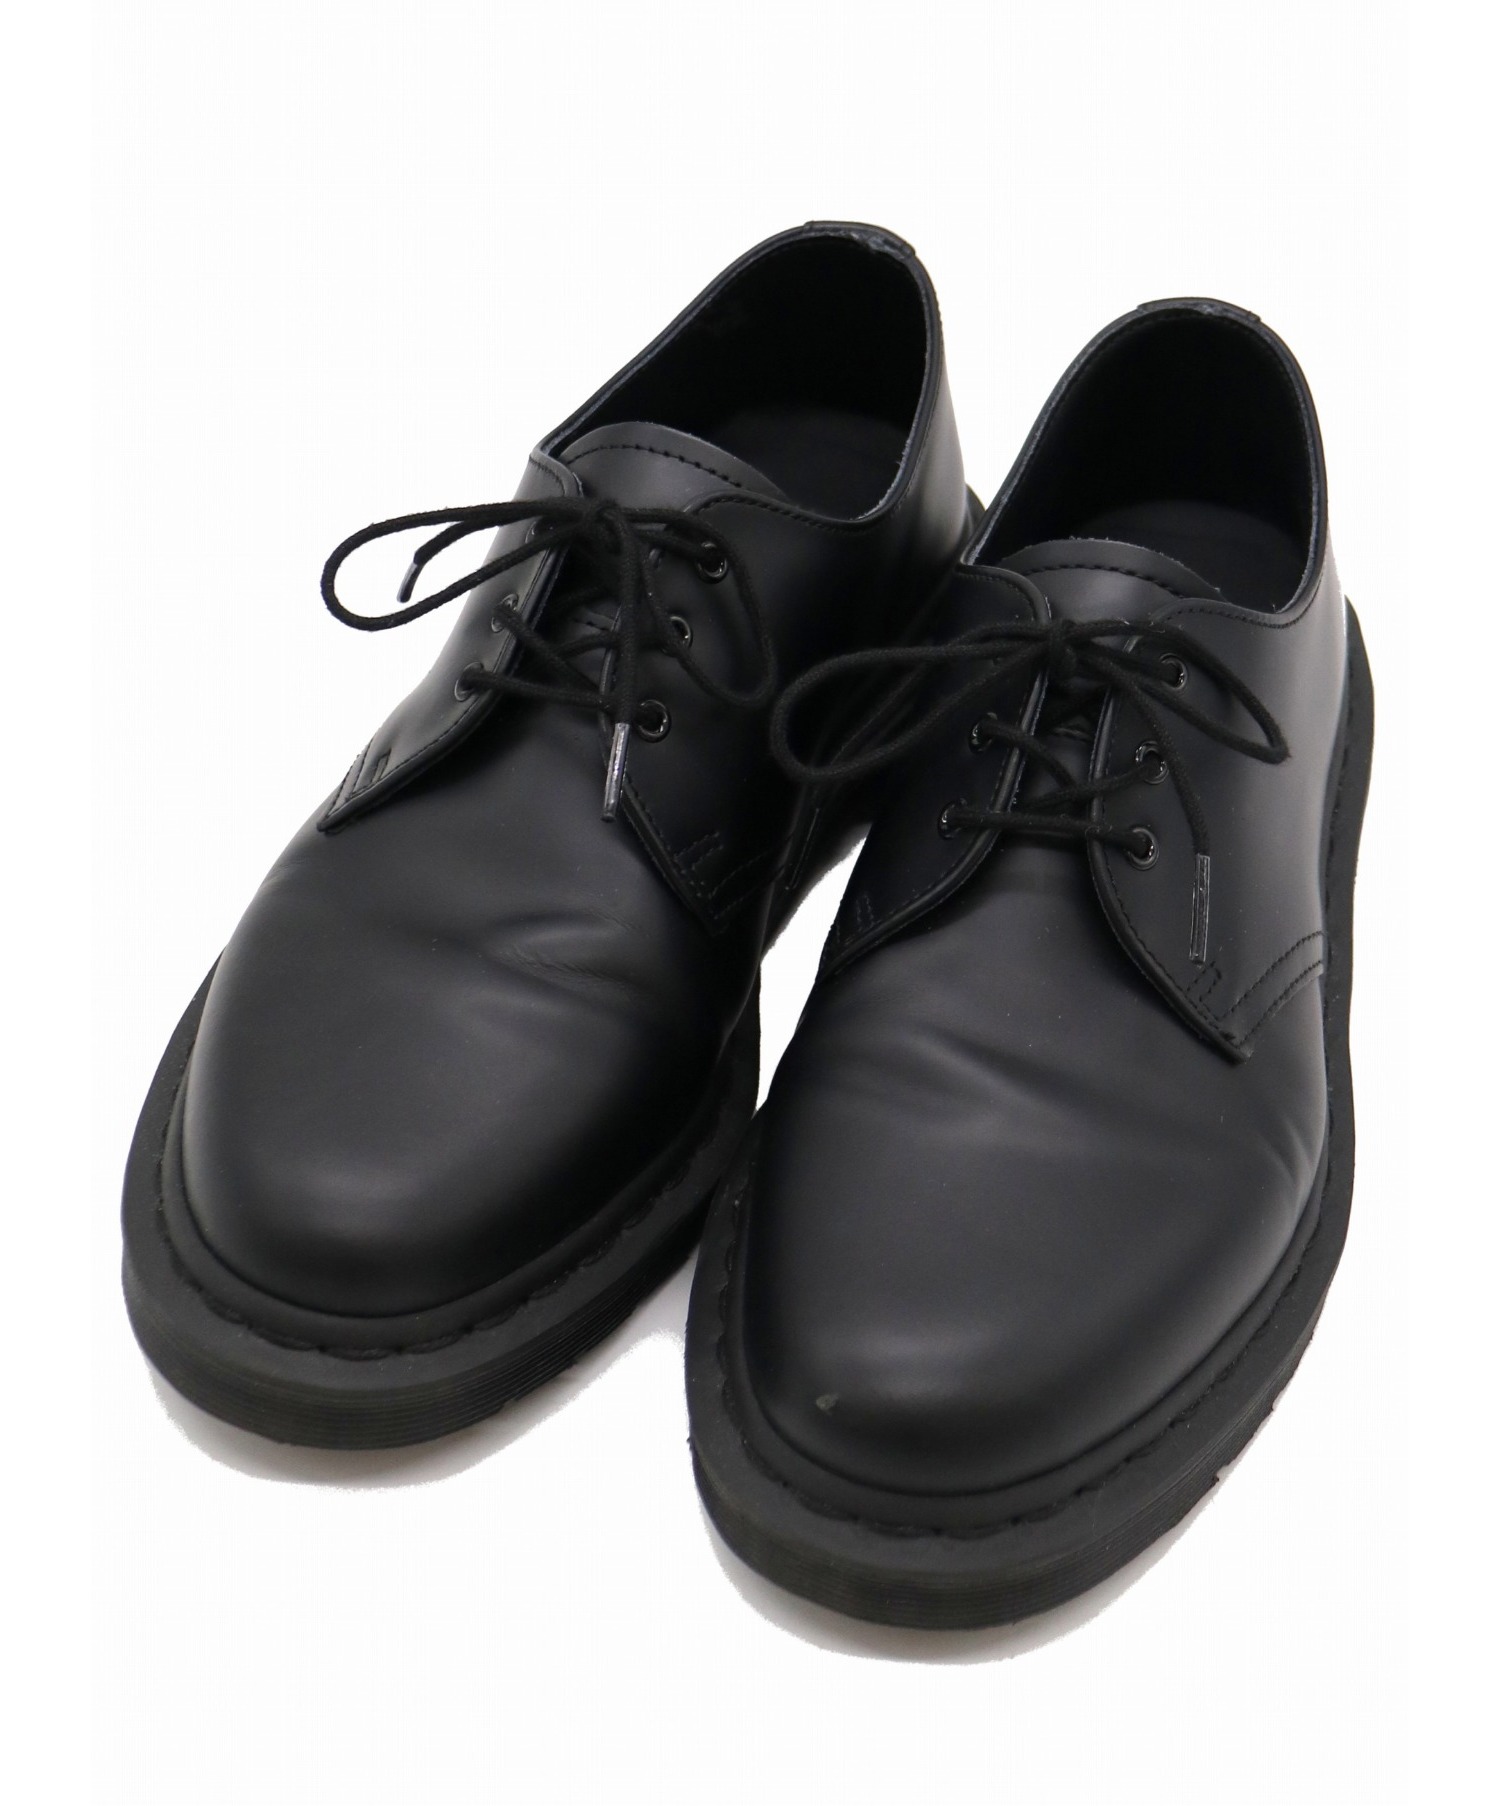 中古 古着通販 Dr Martens ドクターマーチン 3ホールシューズ ブラック サイズ Uk7 Usm8 Usl9 Eu41 Core 1461 Mono 3eye Shoe ブランド 古着通販 トレファク公式 Trefac Fashion